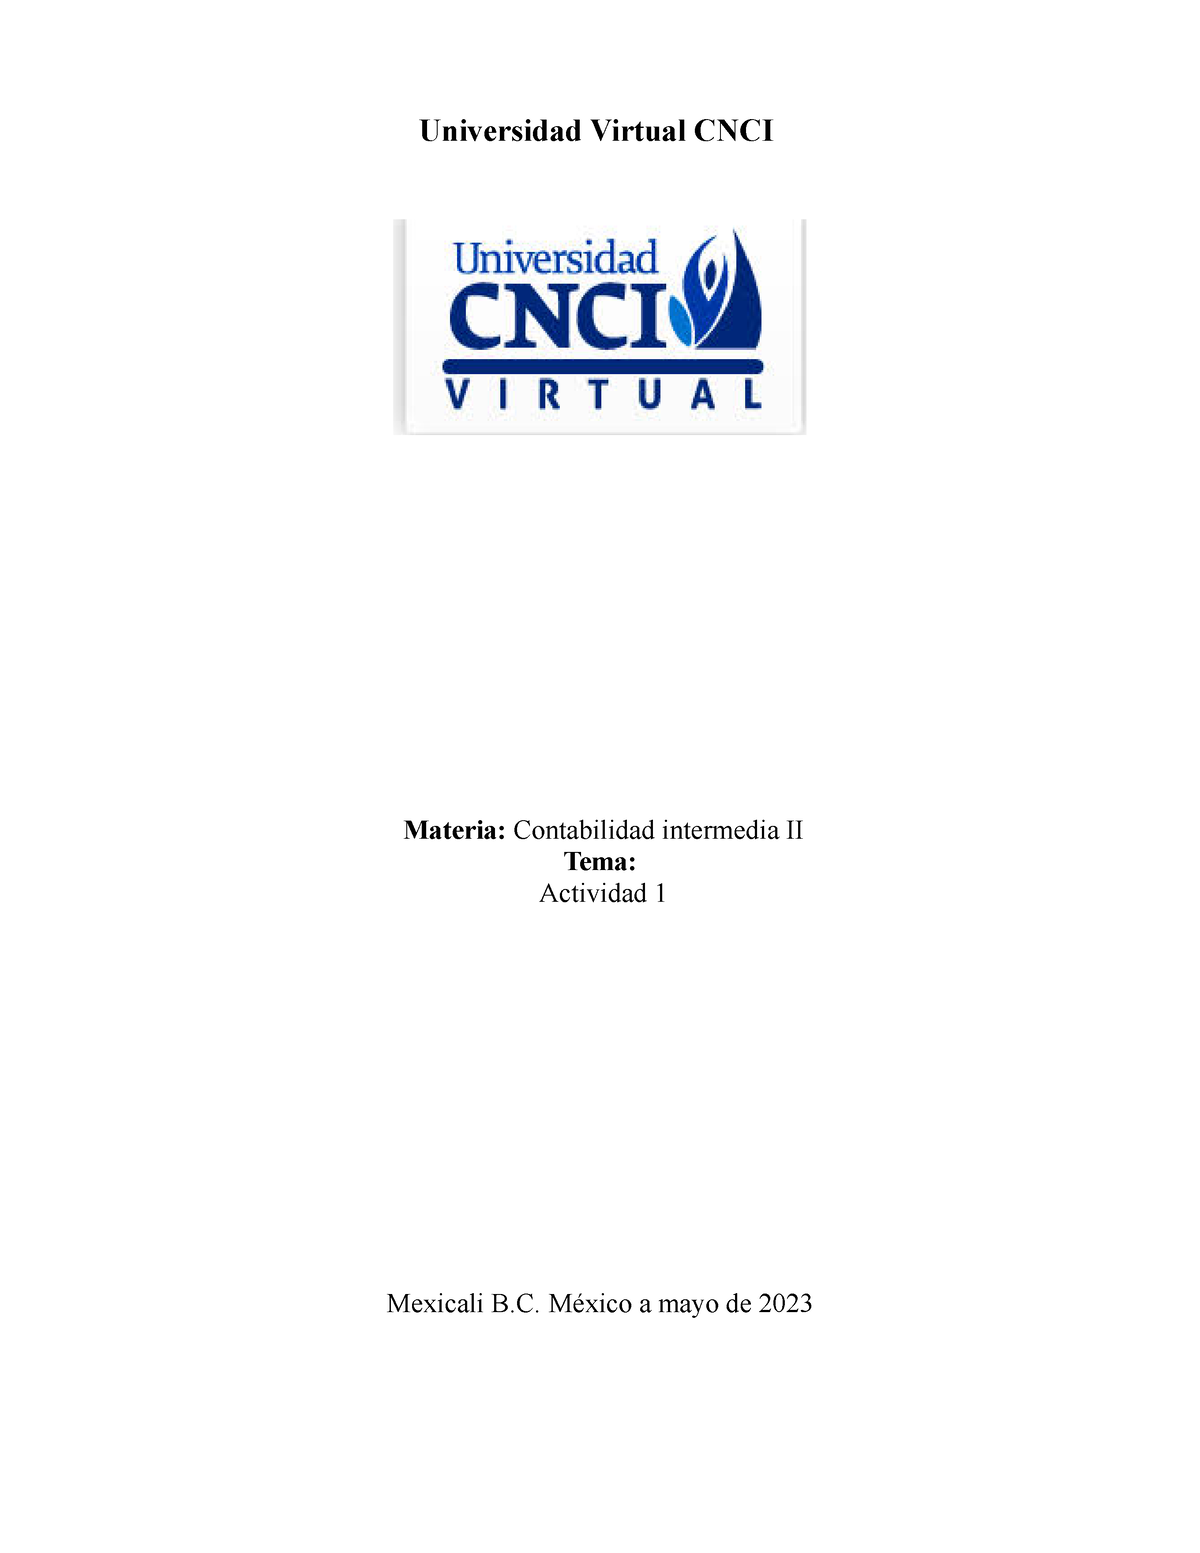 Contabilidad Intermedia 2 Act Universidad Virtual Cnci Materia Contabilidad Intermedia Ii 6756